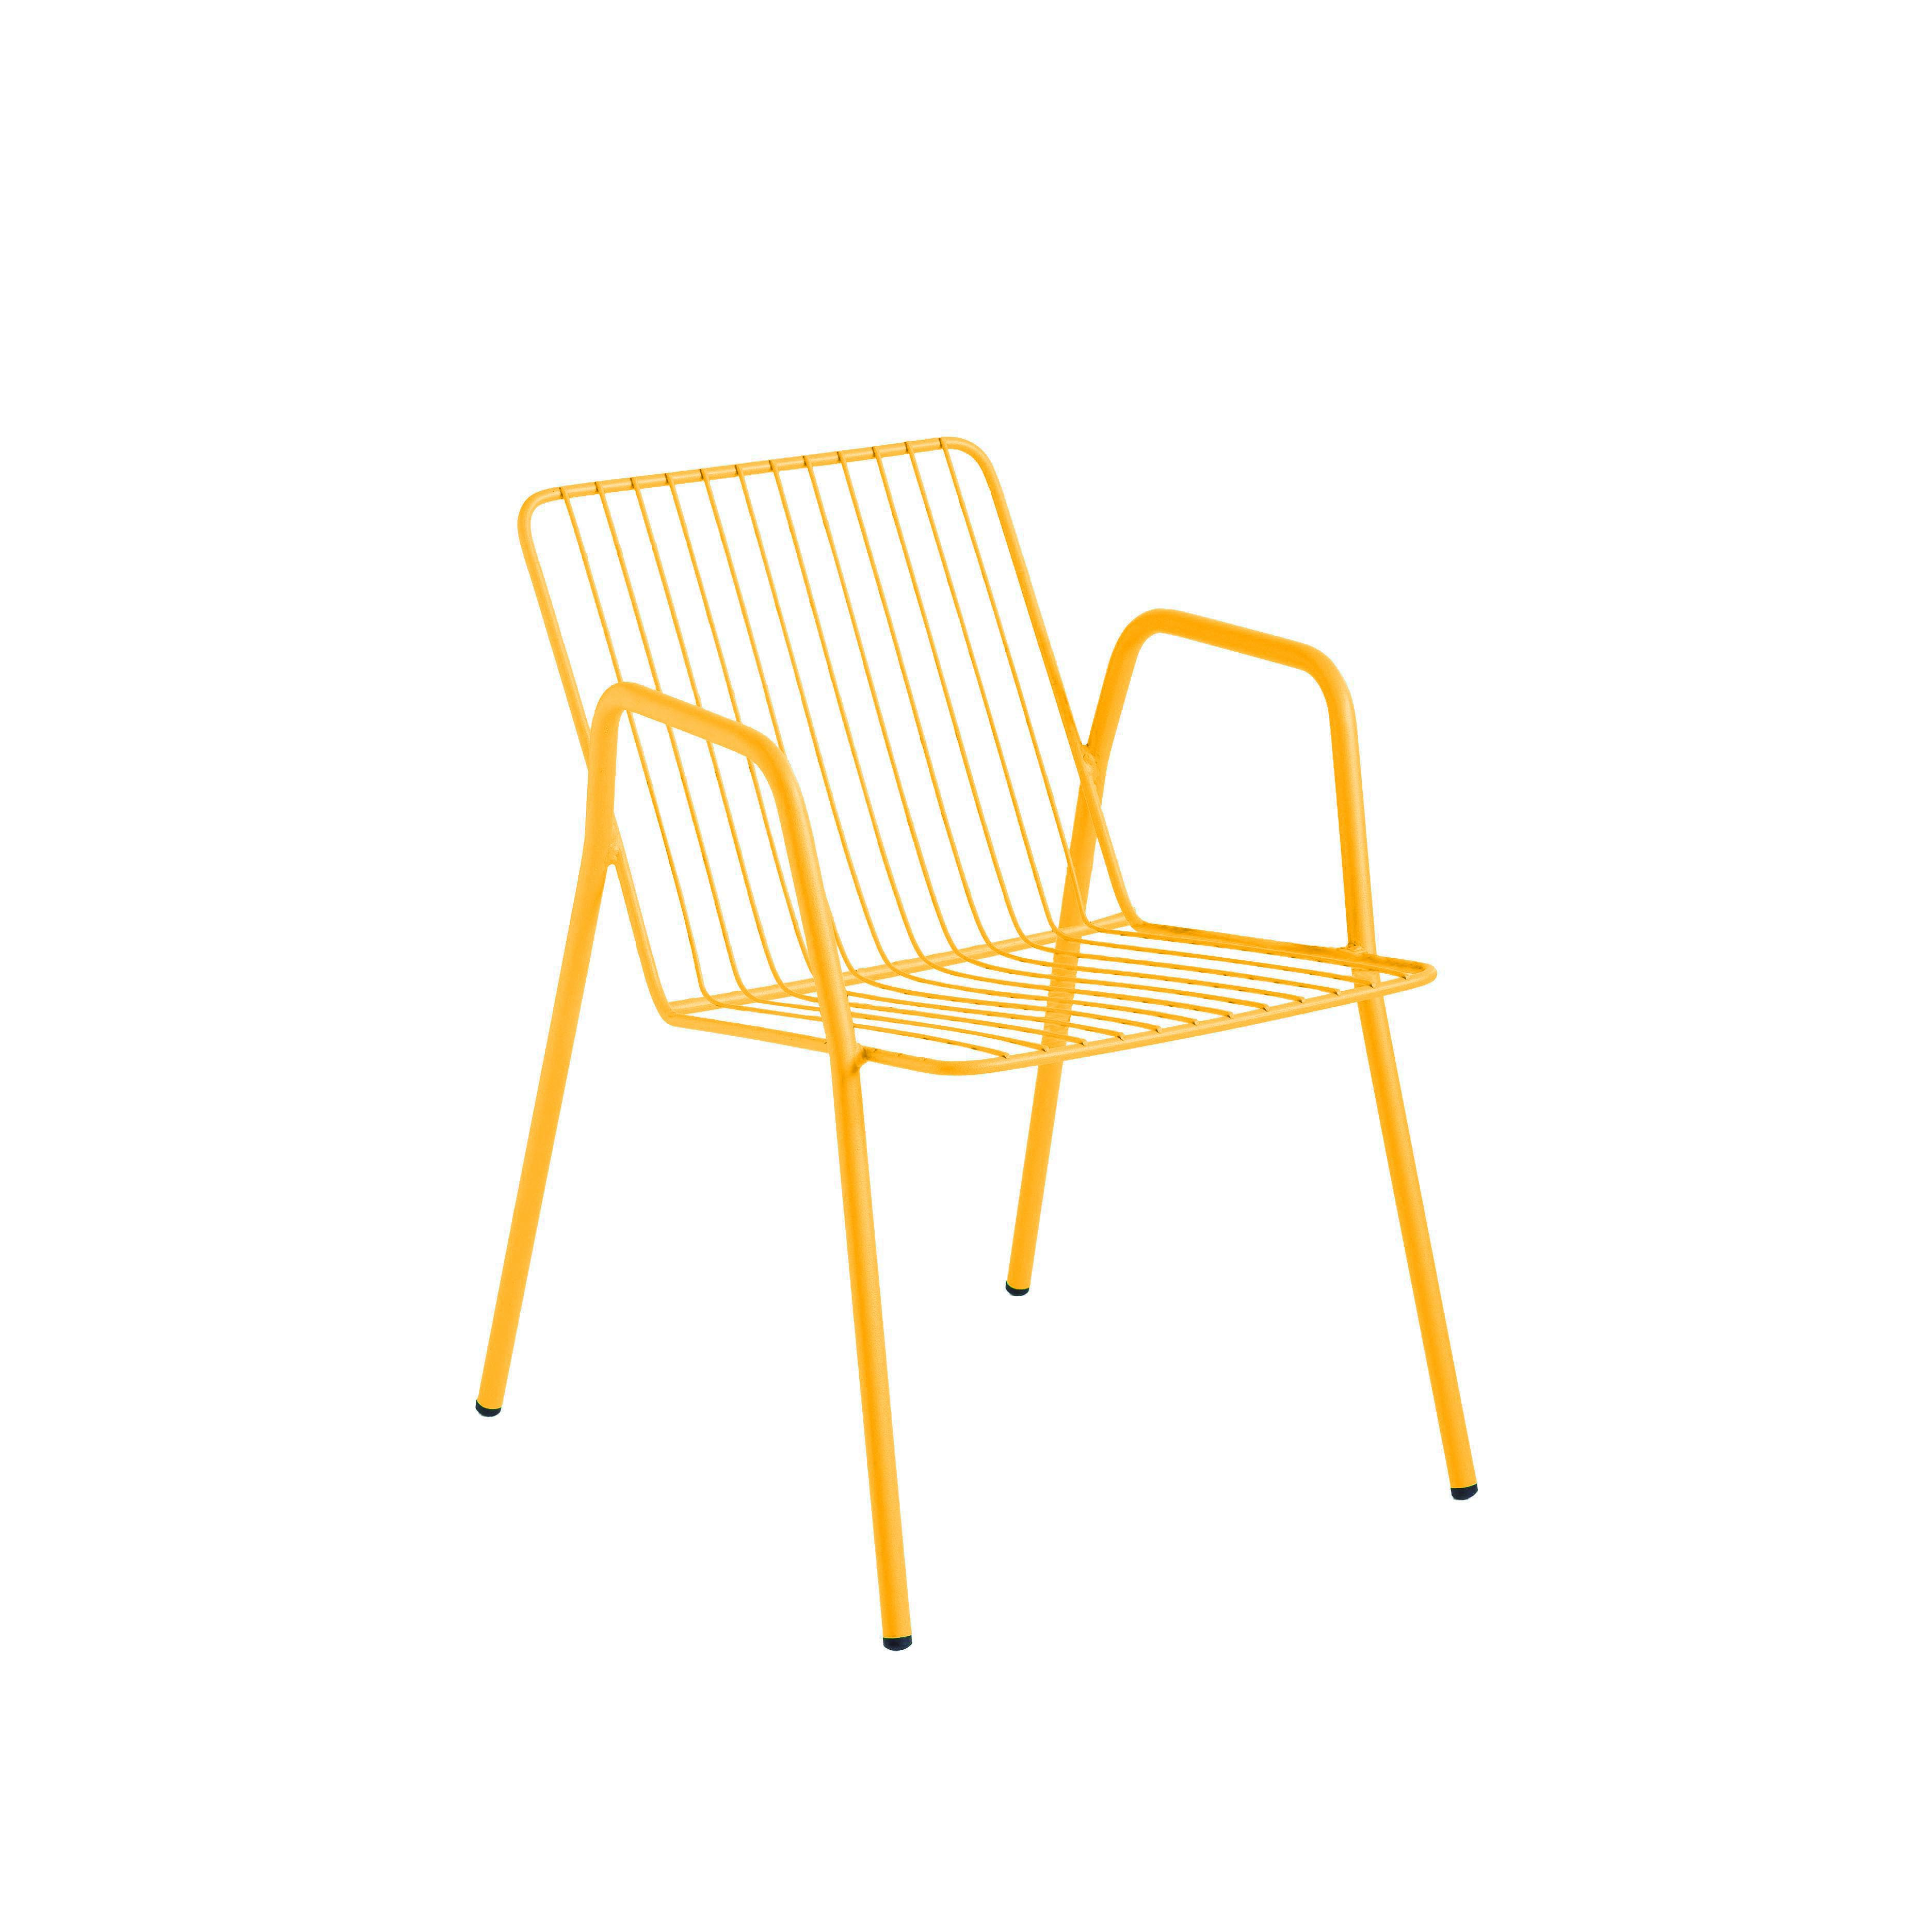 fauteuil en acier galvanisé jaune